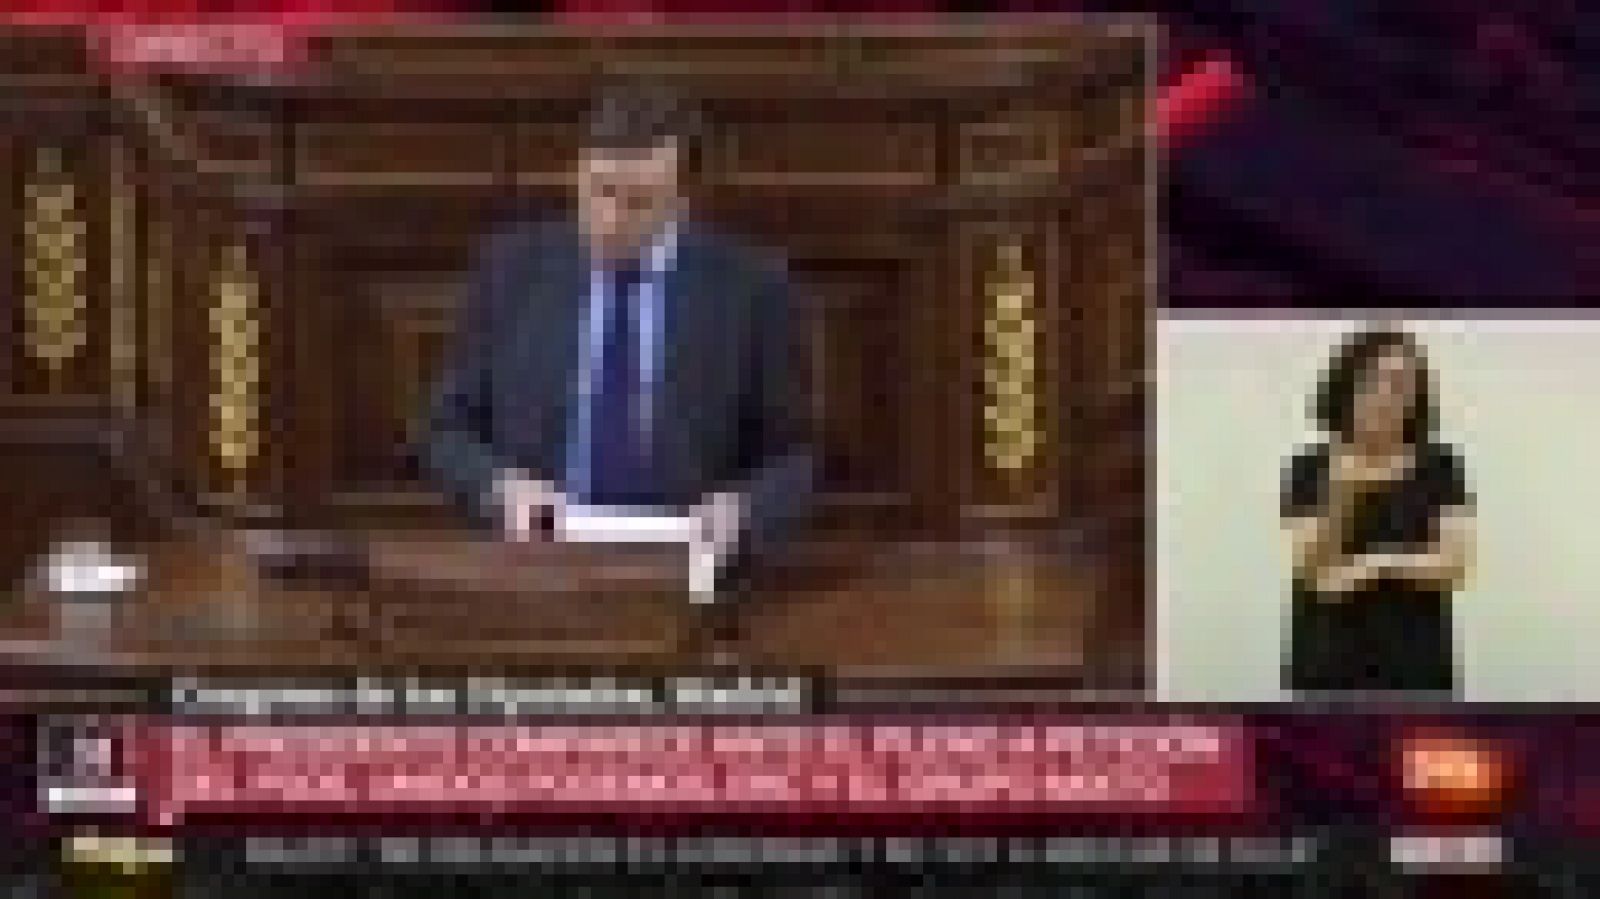 Hernando defiende a Rajoy: "¿Por qué le piden al PP lo que no se le pide a otros?"